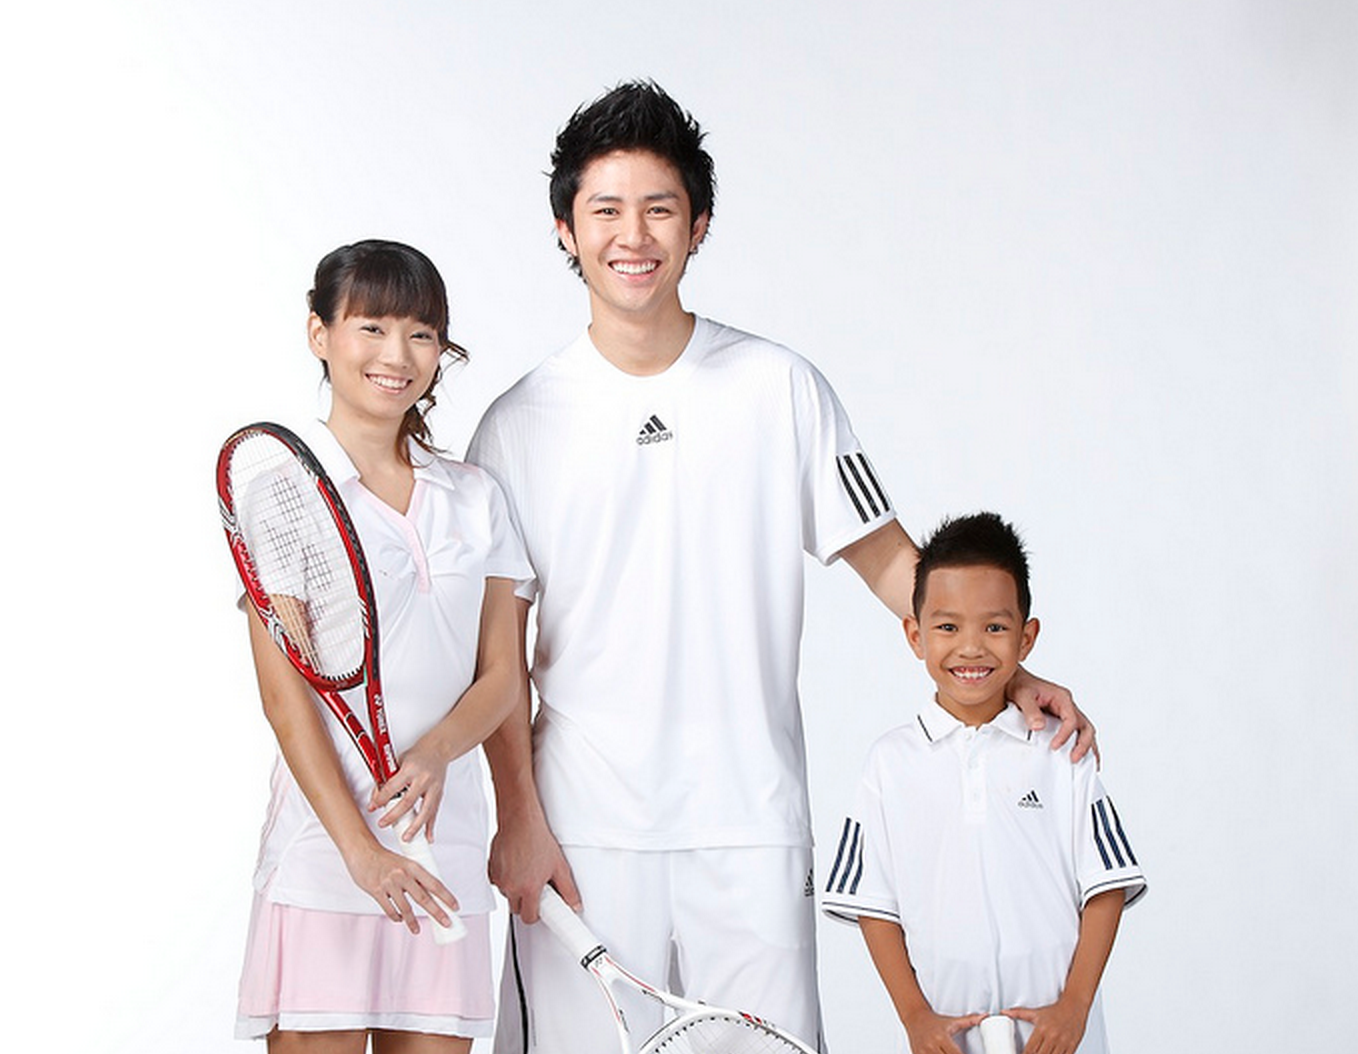 テニス初心者 テニスファッションを楽しもう Apf Academies